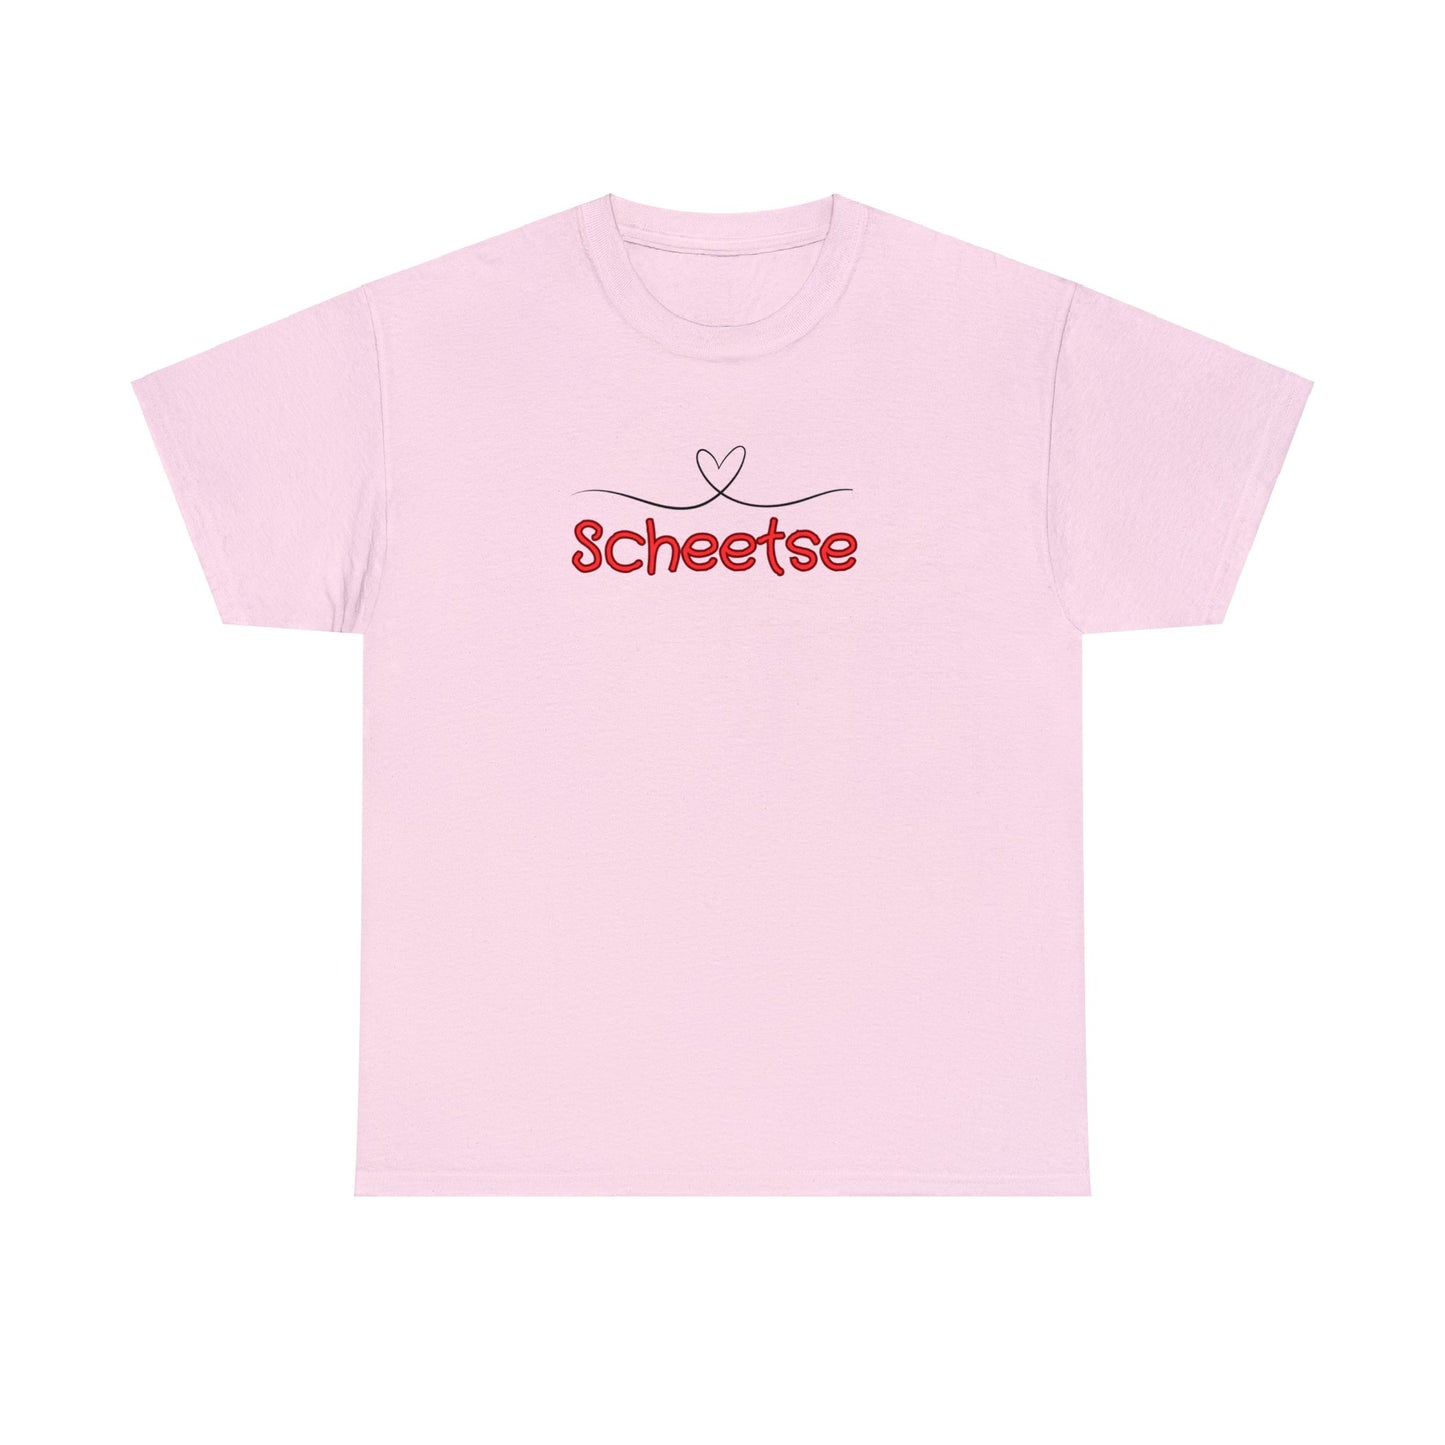 Int Gentsch - Tshirt - Scheetse